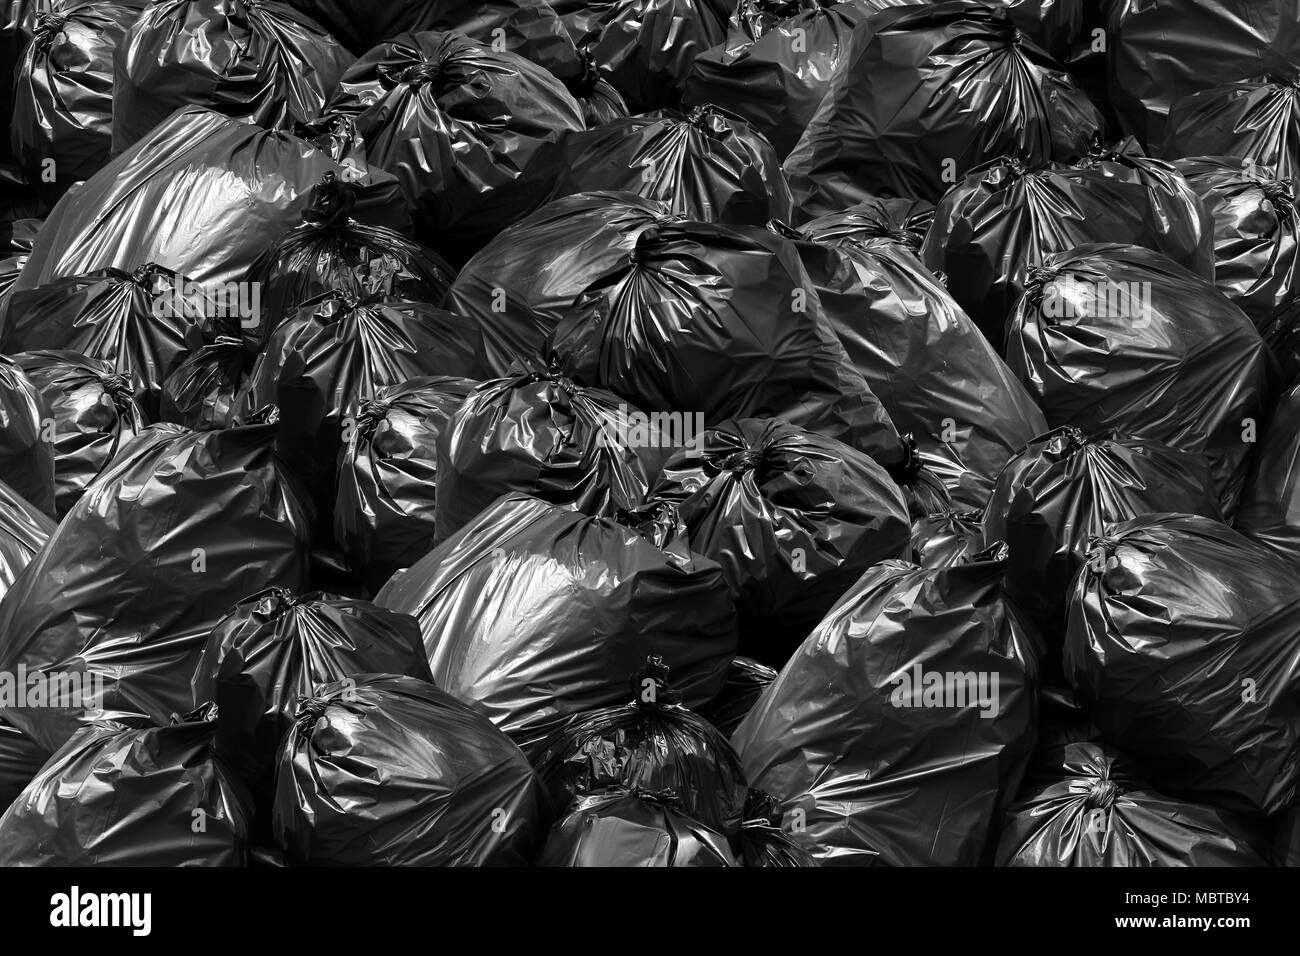 Background garbage bag black bin, Garbage dump, Bin,Trash, Garbage, Rubbish, Plastic Bags pile junk garbage Trash texture Stock Photo